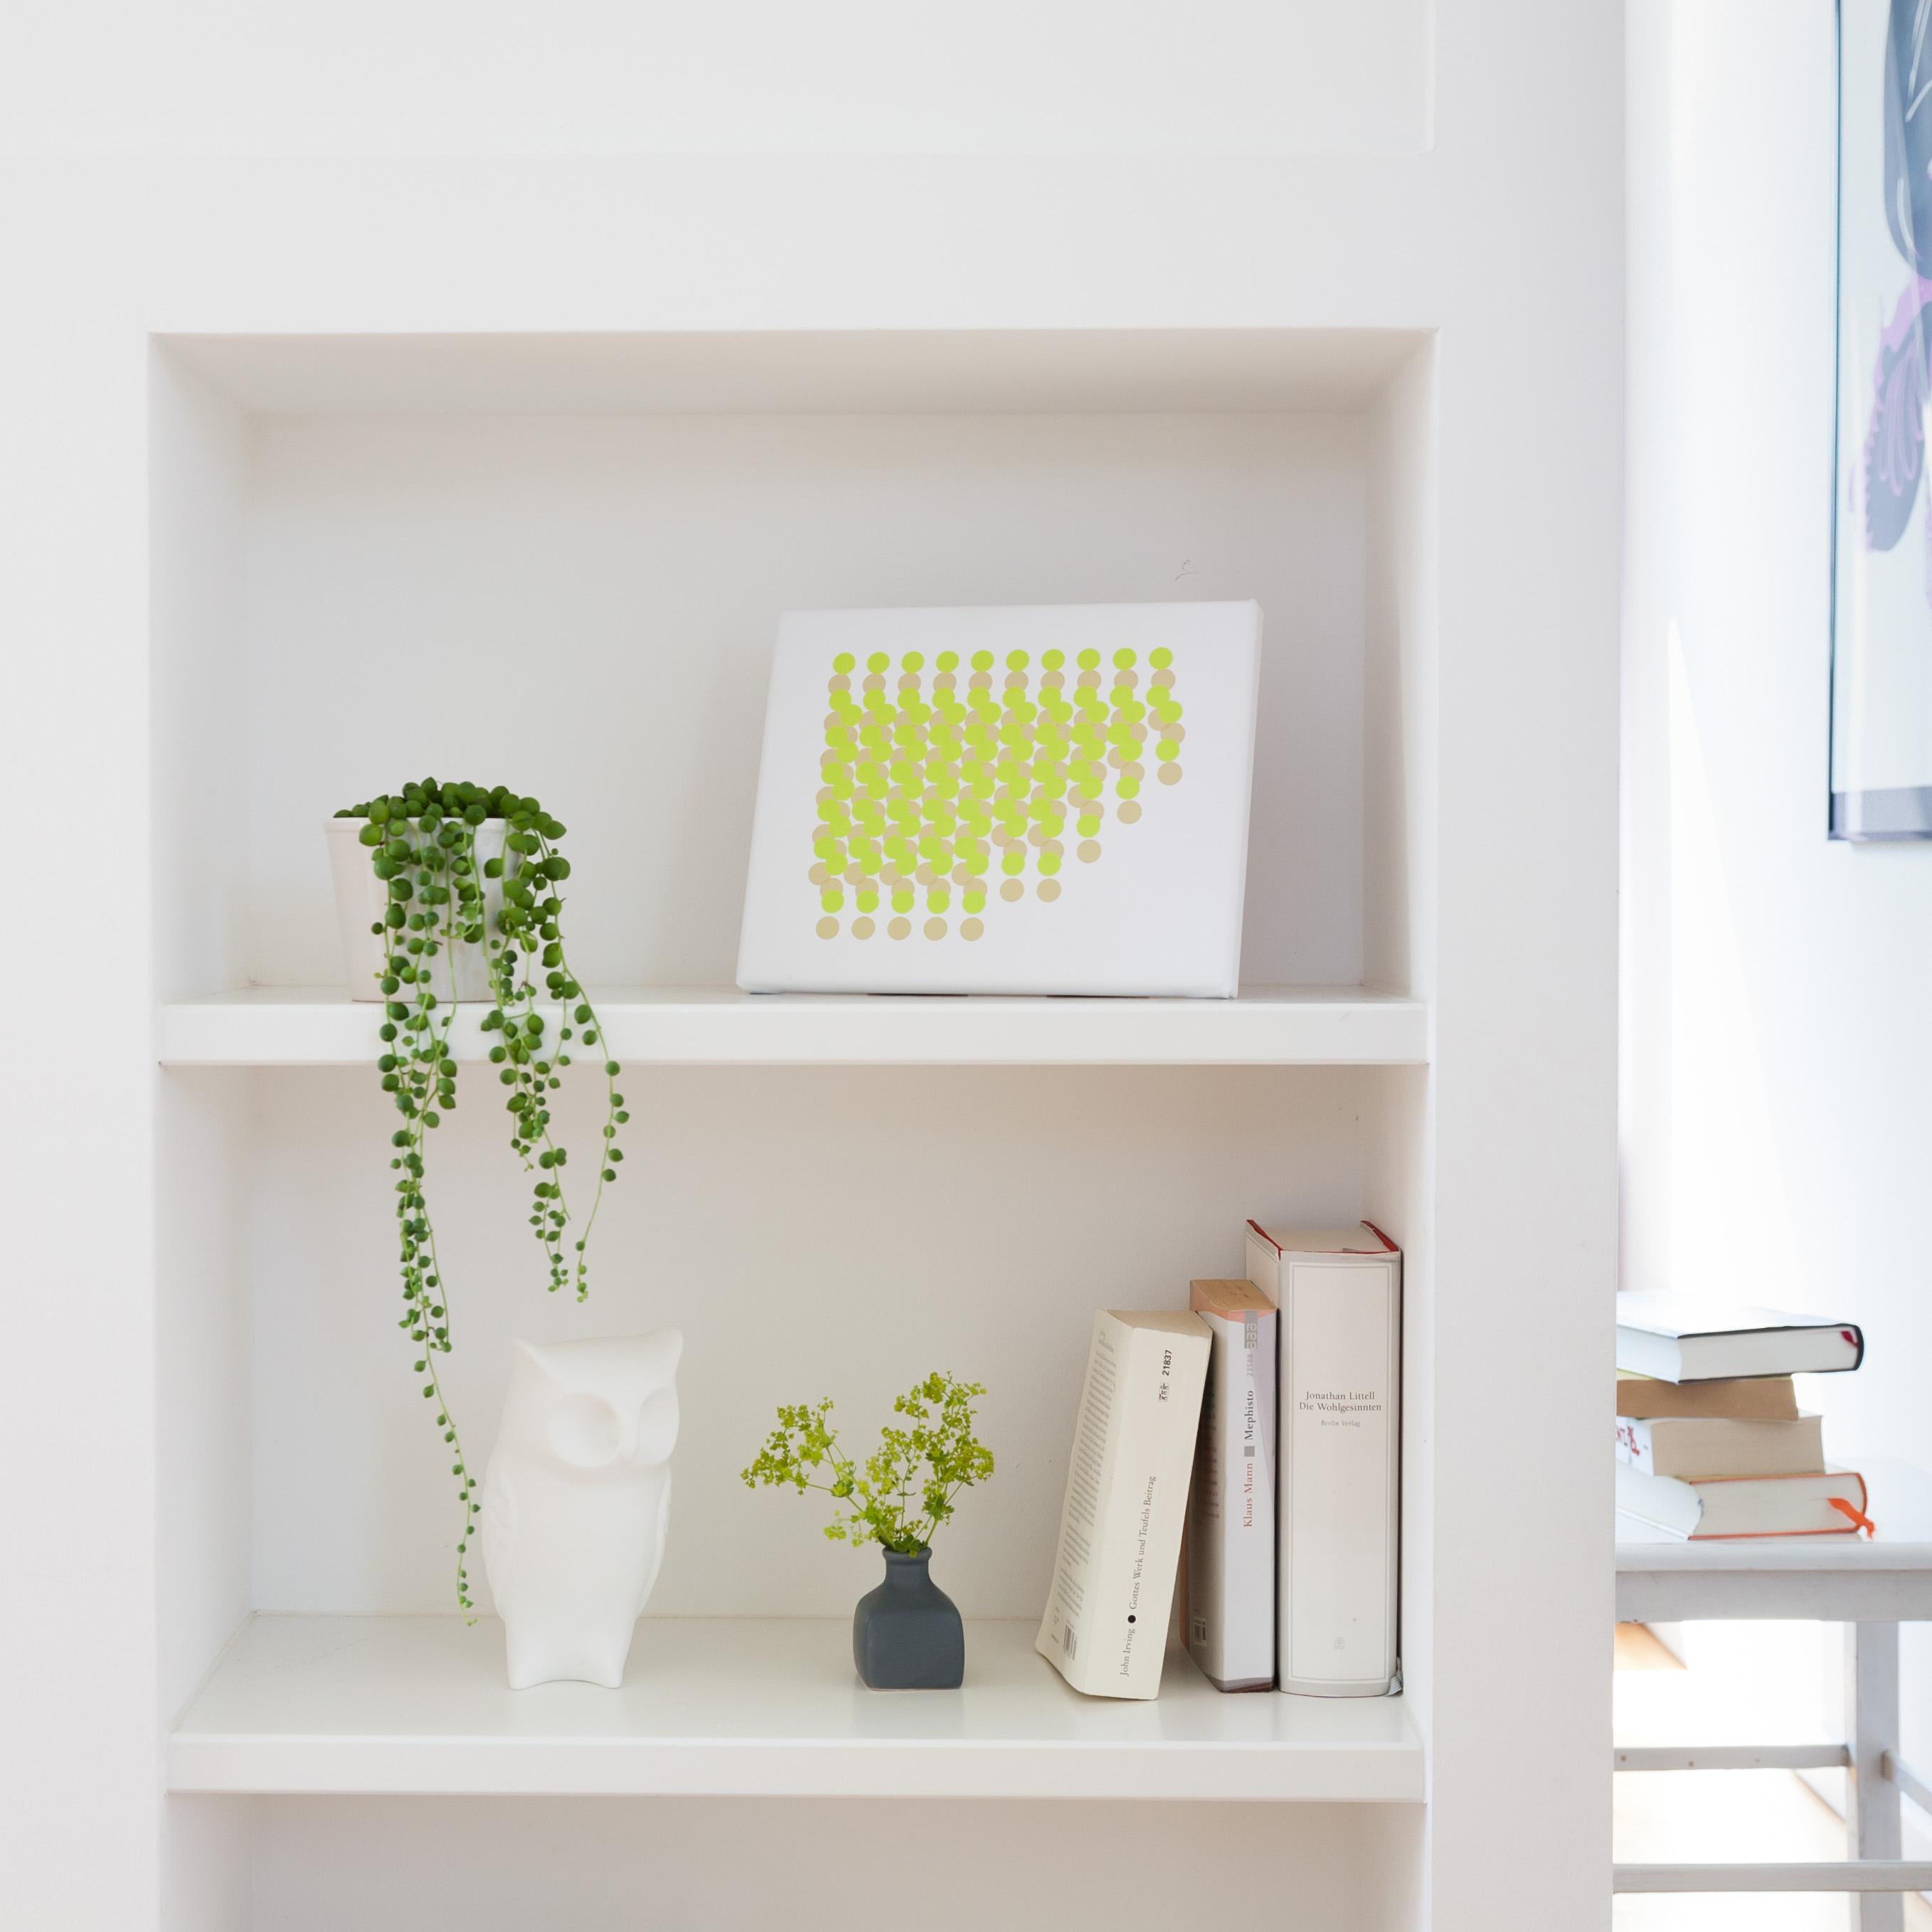 Kunstdrucke passend für ́s eigene Zuhause. #minimalismus #minimalistisch #livingathome ©VINTA SERIES